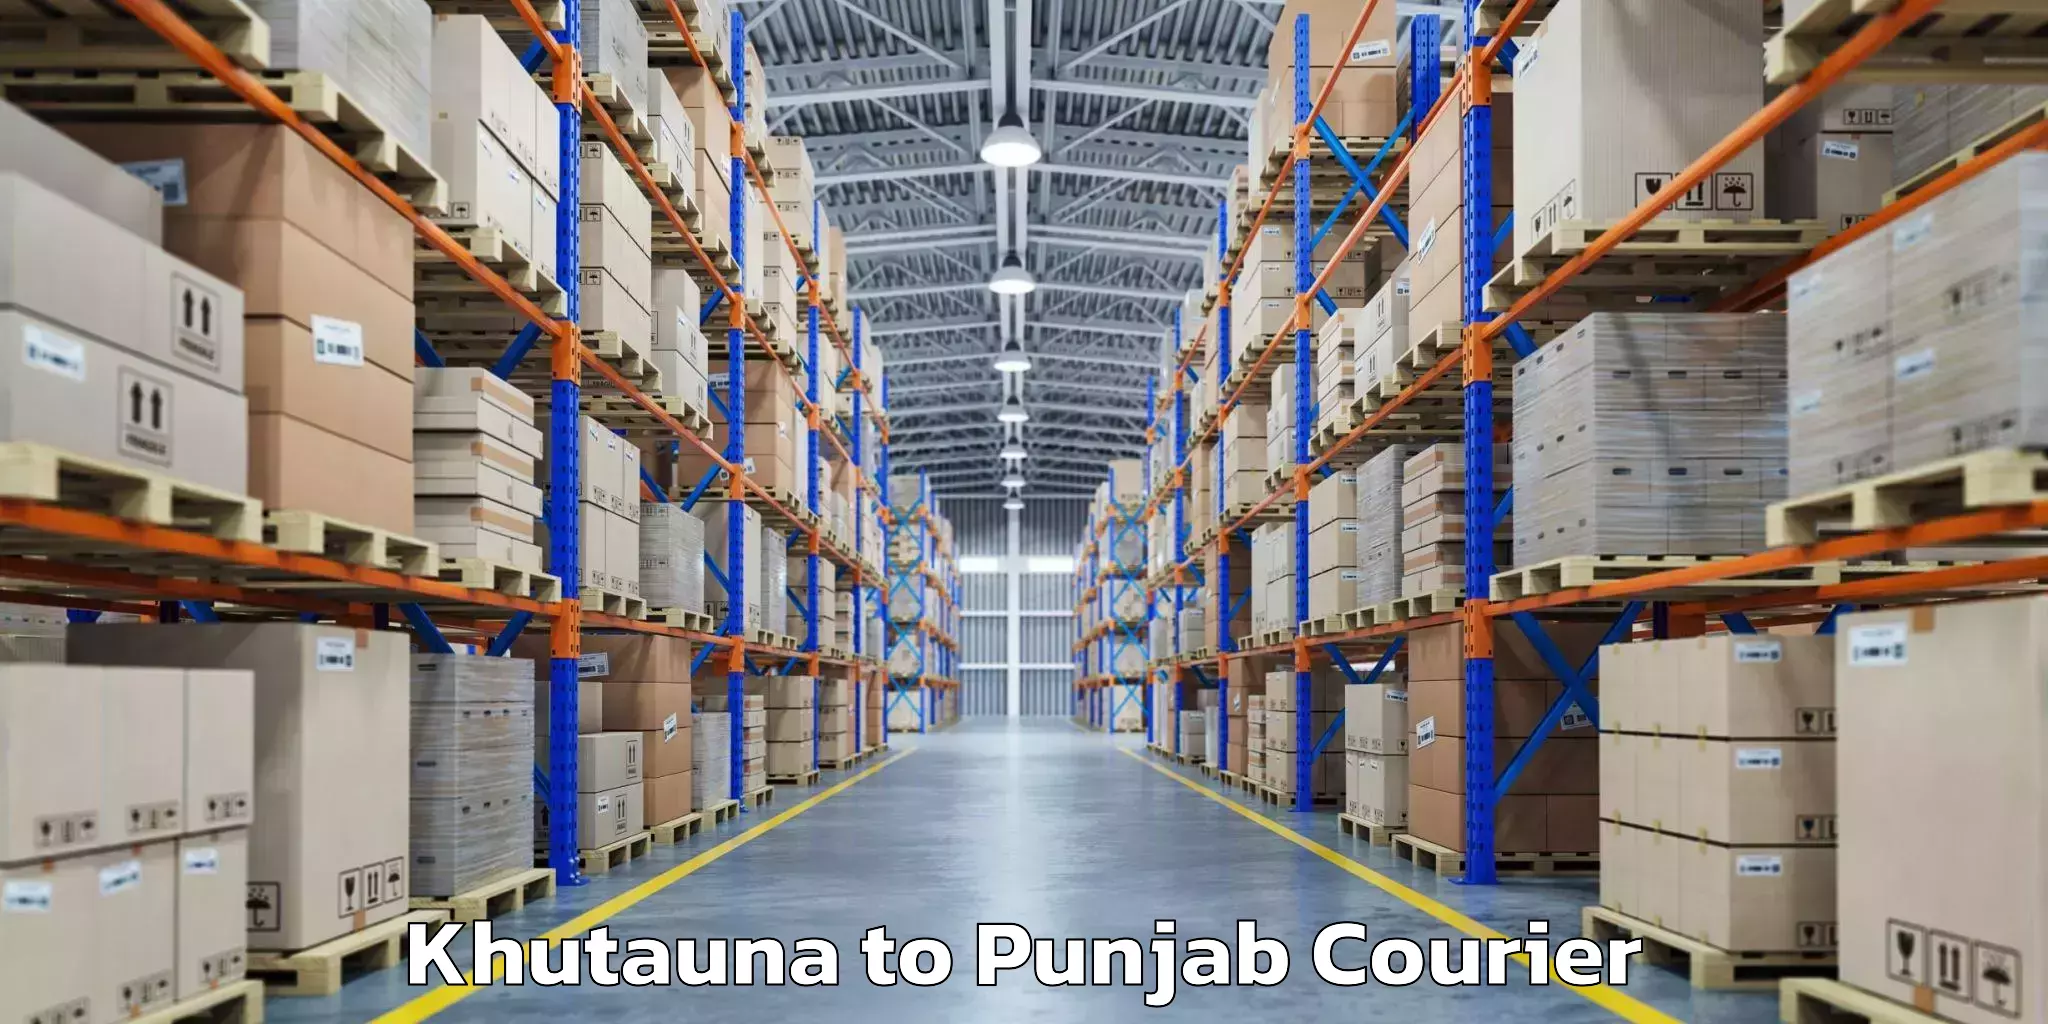 Baggage transport network Khutauna to Punjab